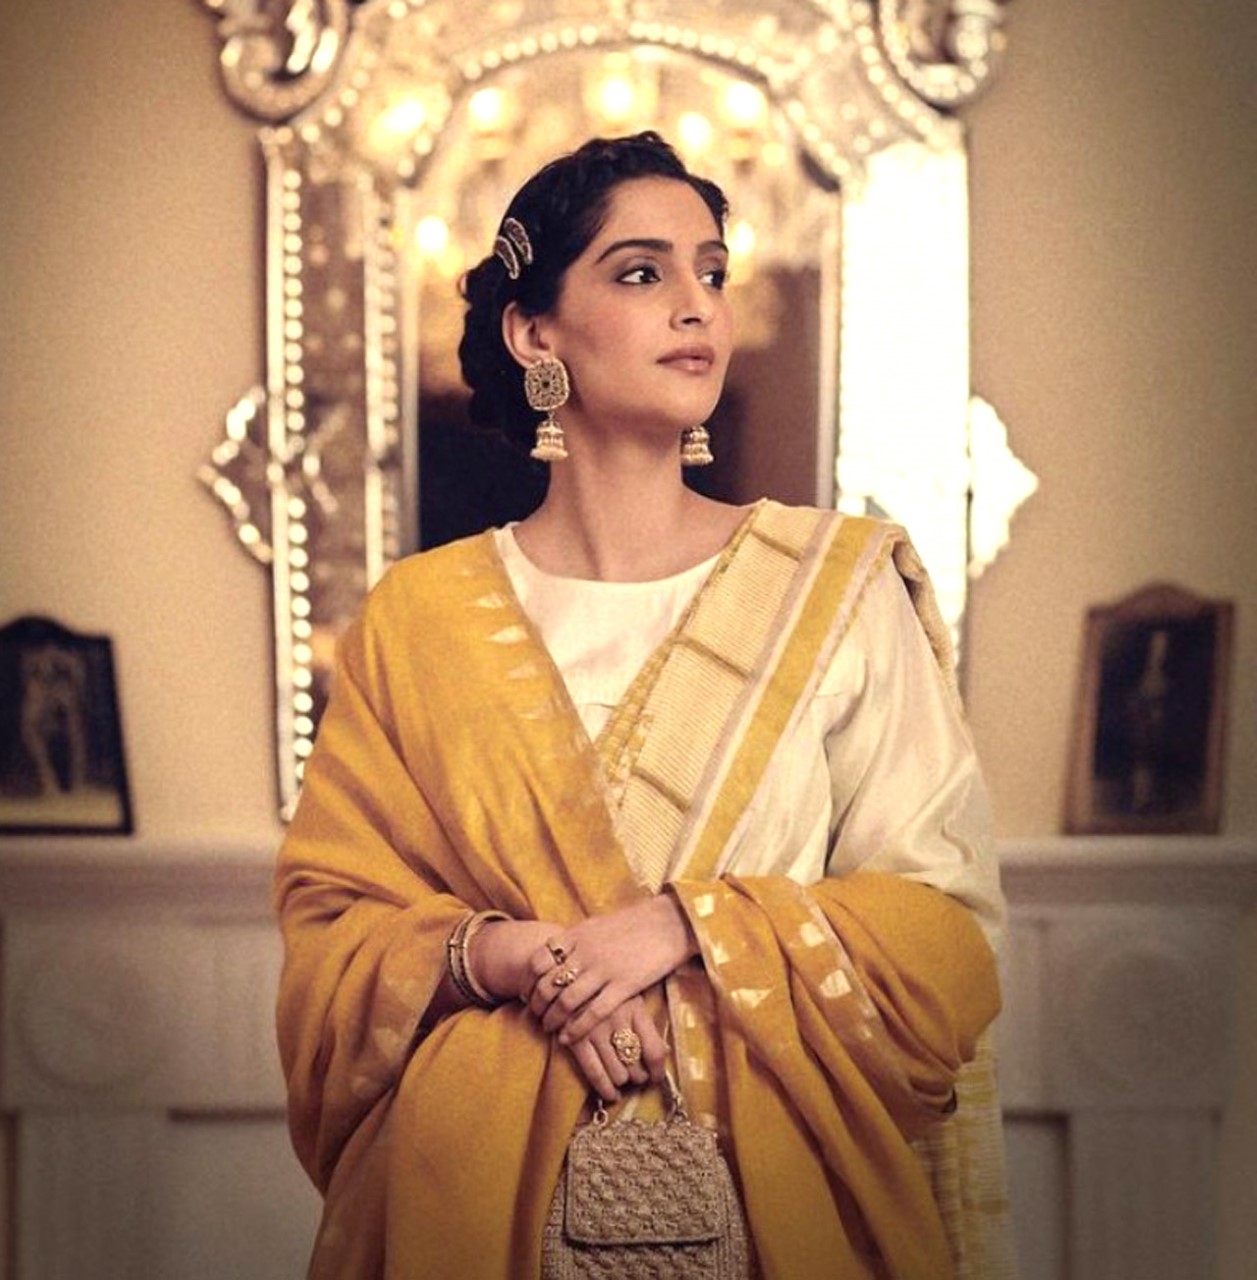 Sonam Kapoor oozes unique ethnic charm in yellow linen saree